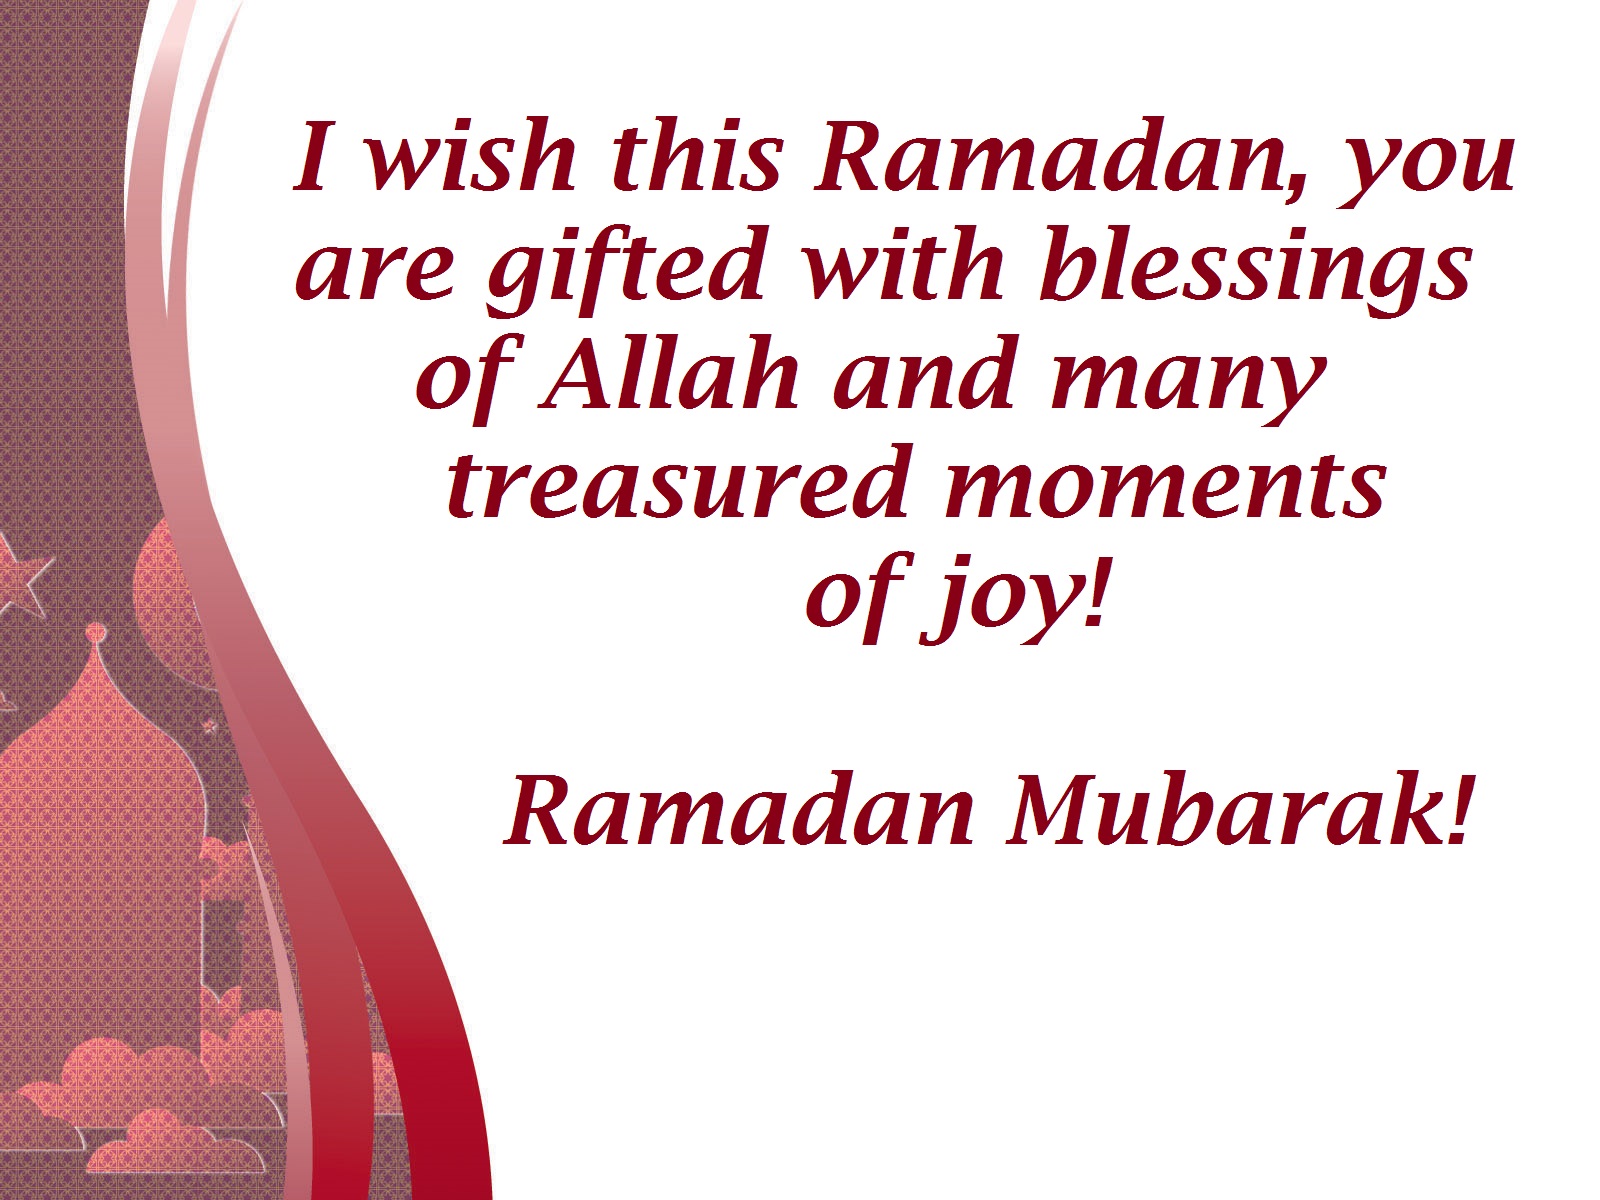 greetings image for ramadan